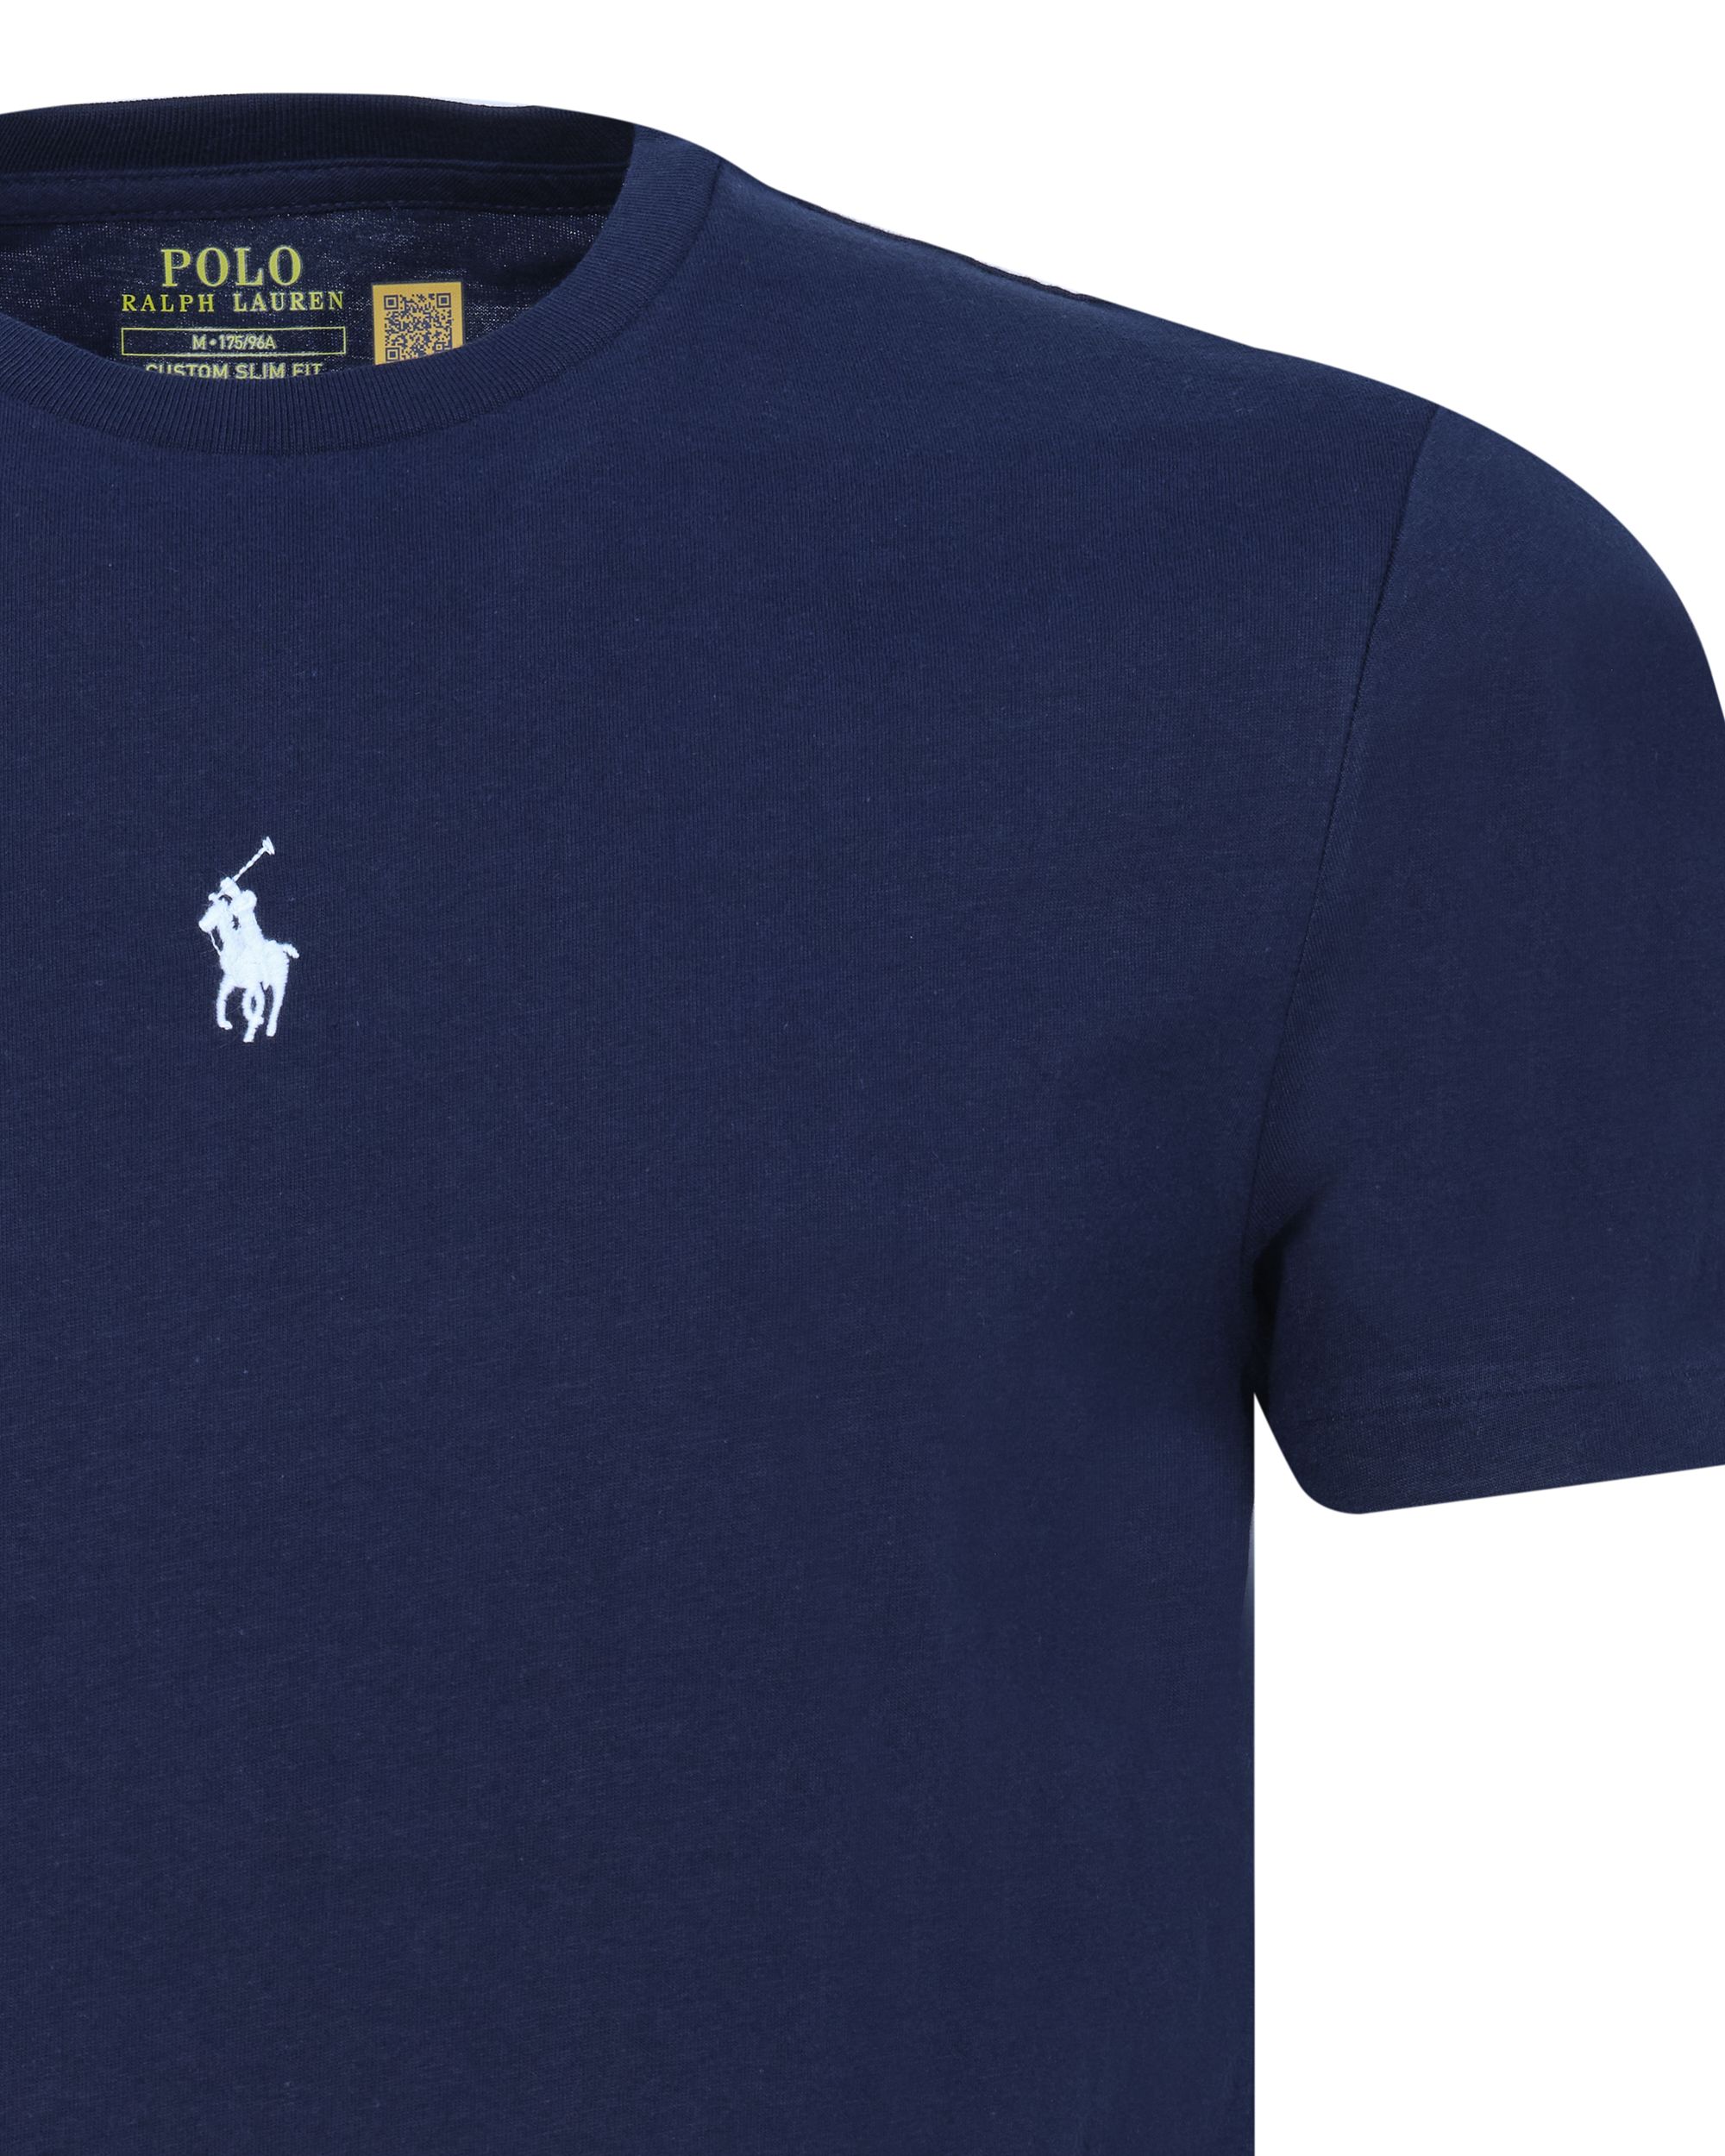 Polo Ralph Lauren T-shirt KM Donker blauw 080570-001-L